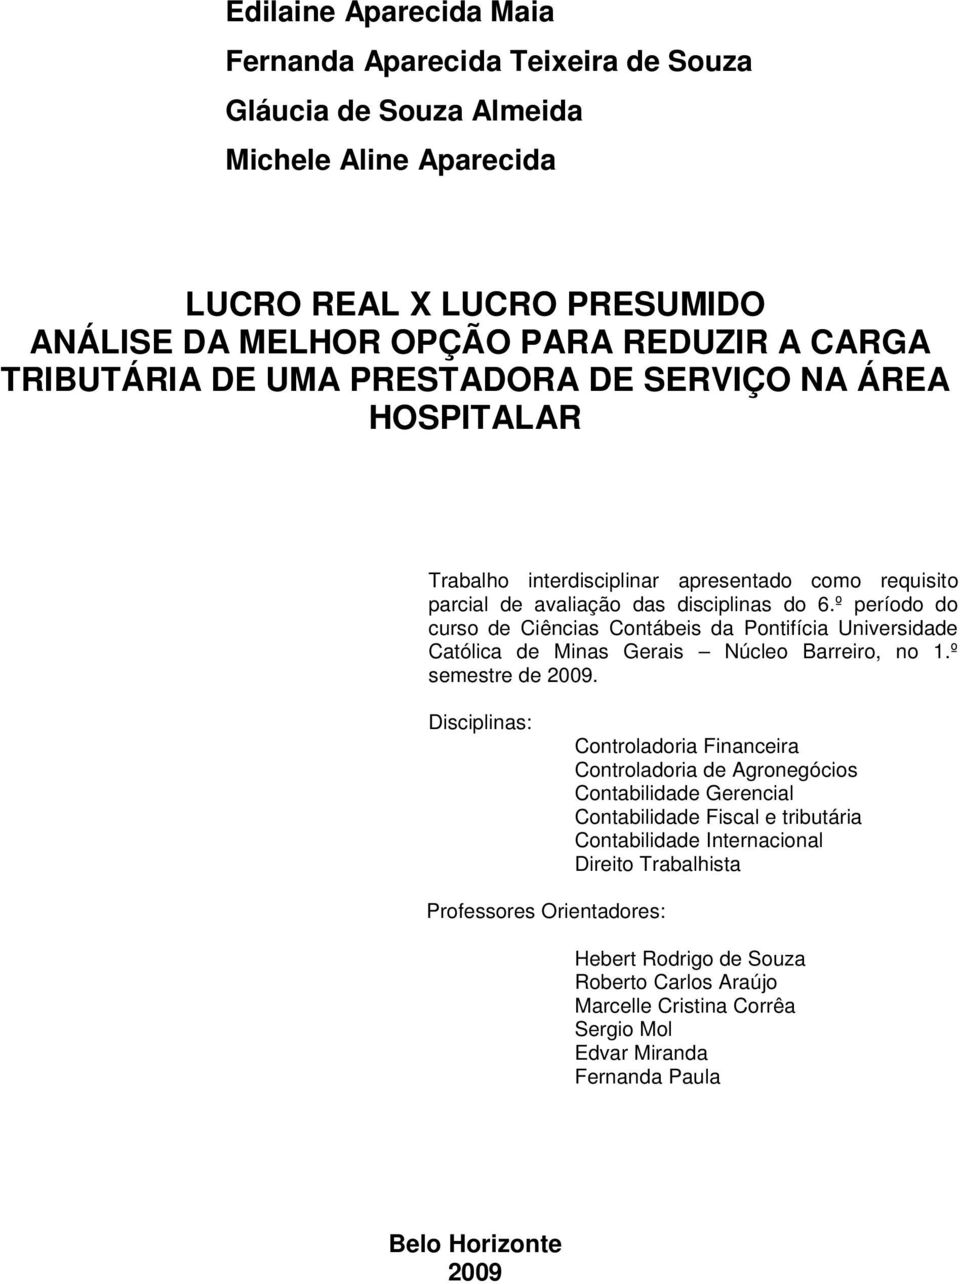 º período do curso de Ciências Contábeis da Pontifícia Universidade Católica de Minas Gerais Núcleo Barreiro, no 1.º semestre de 2009.